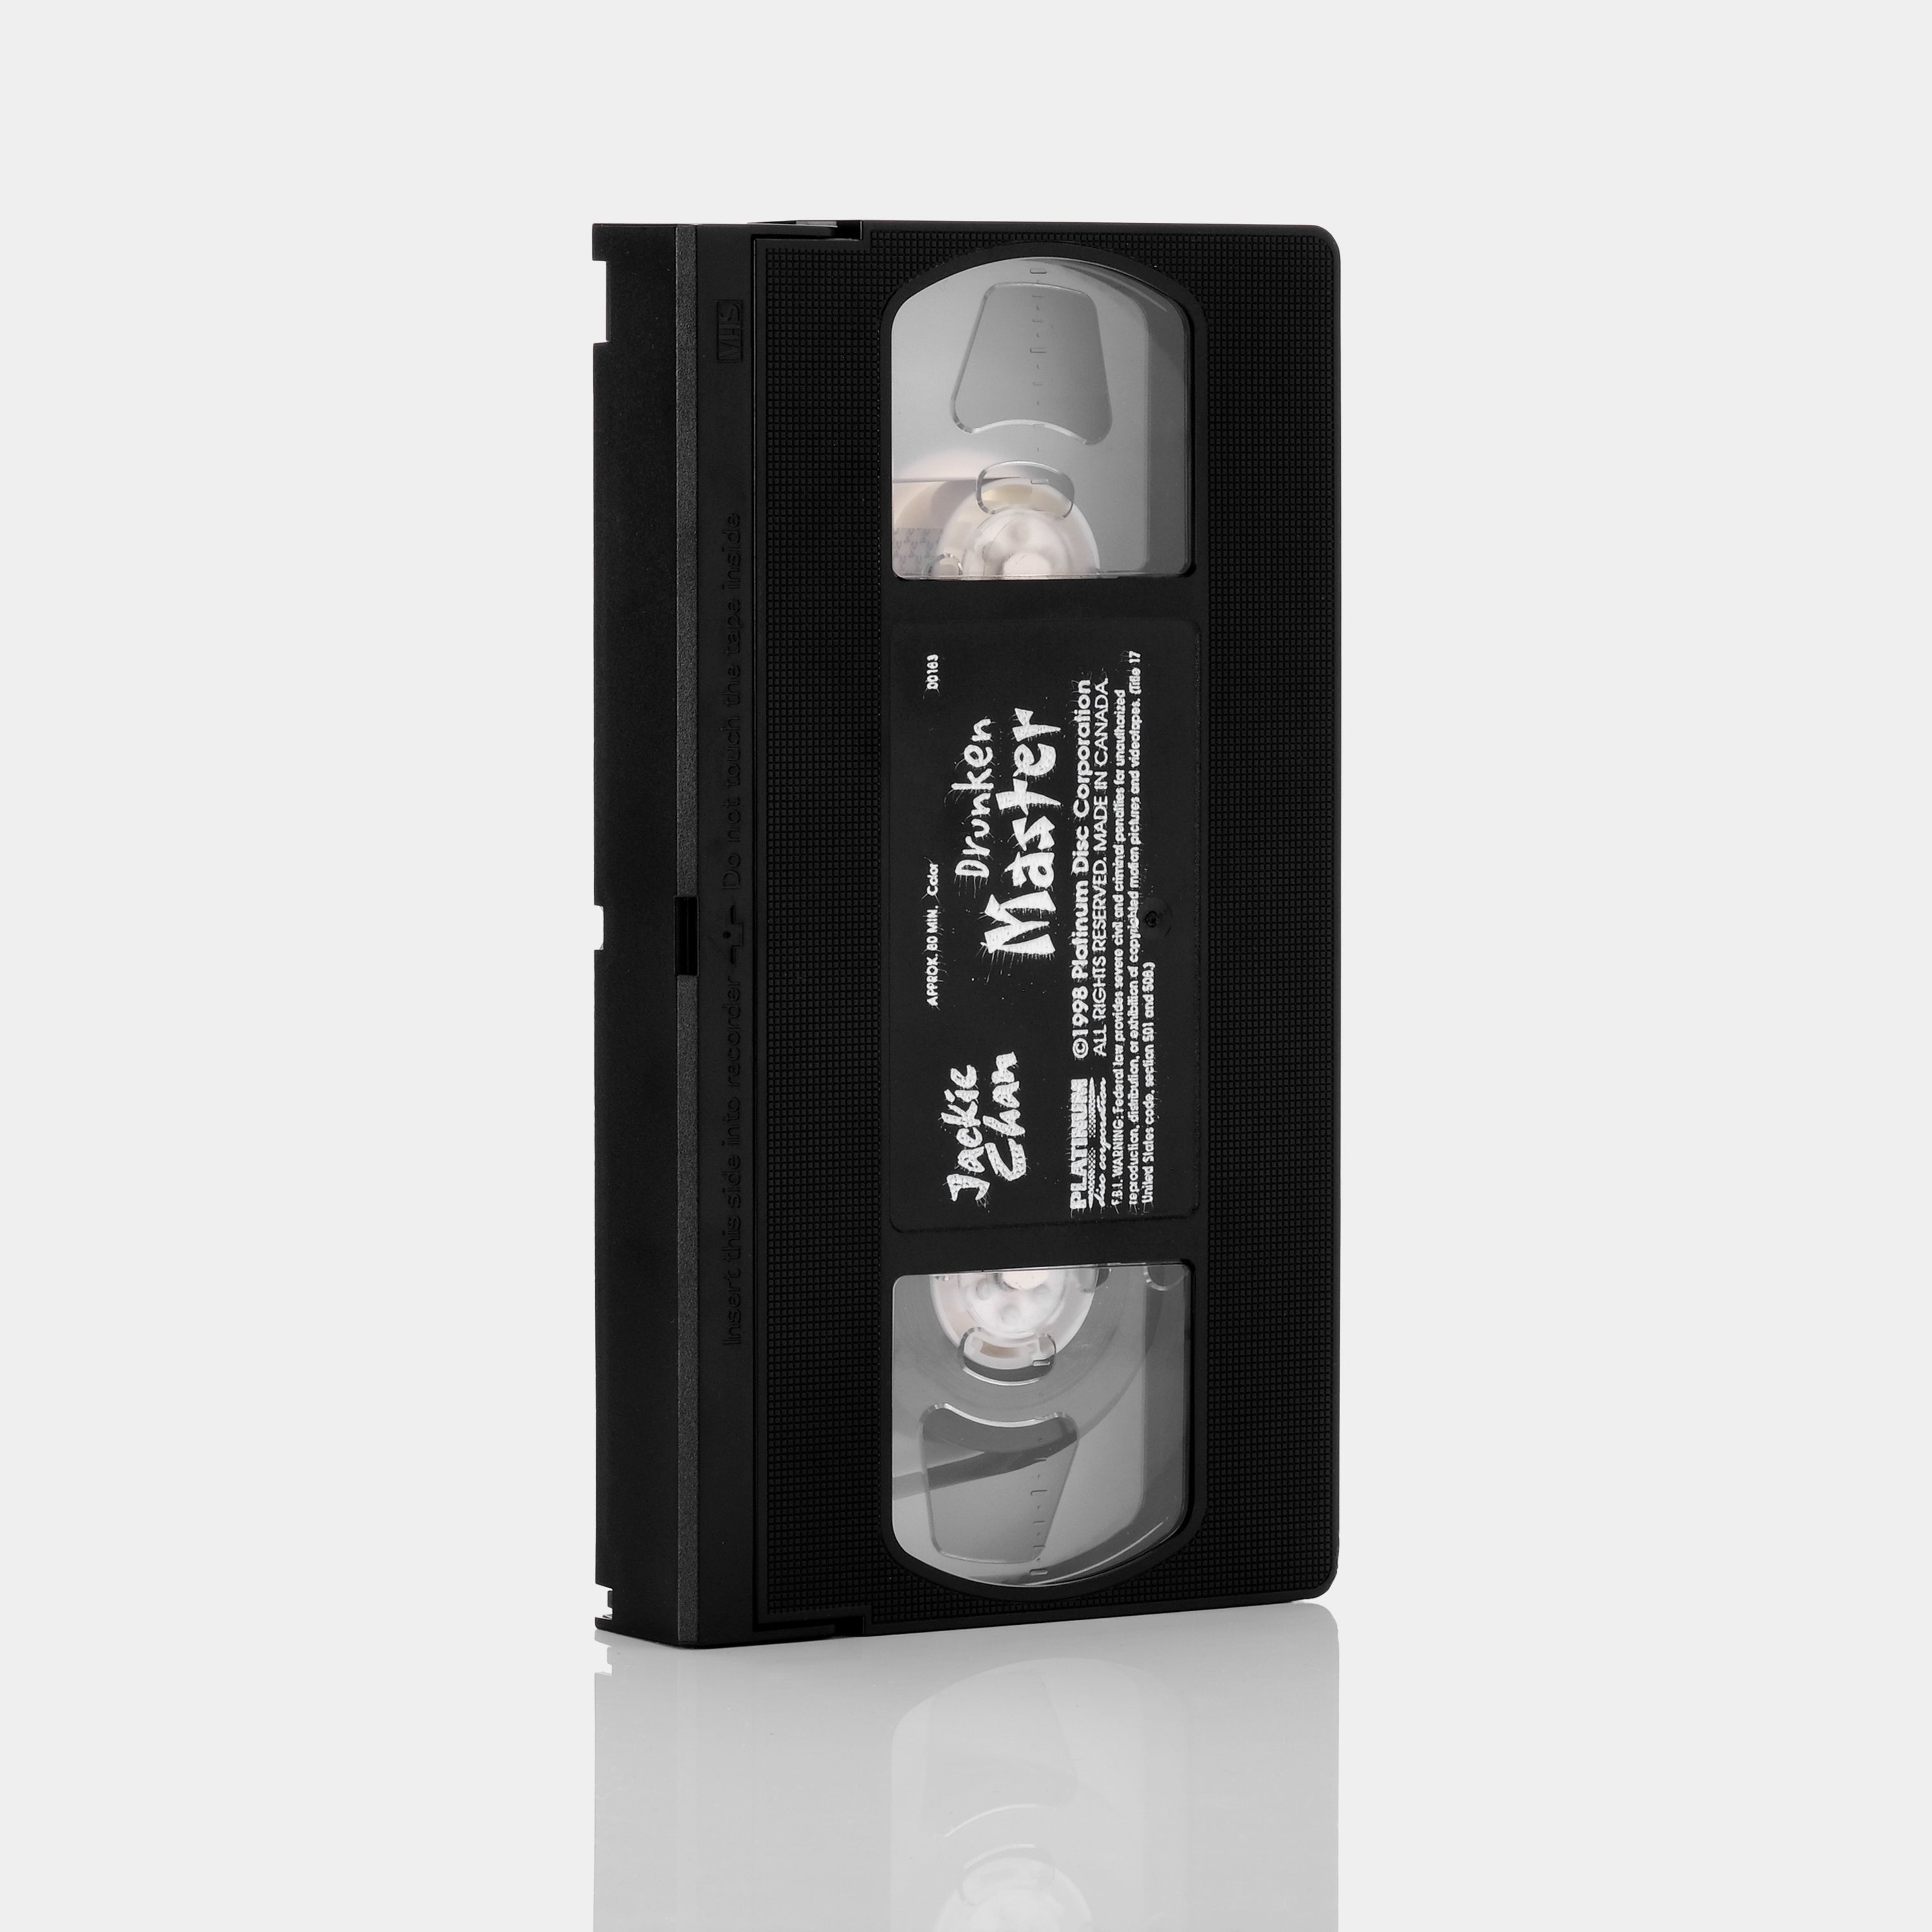 Drunken Master VHS Tape